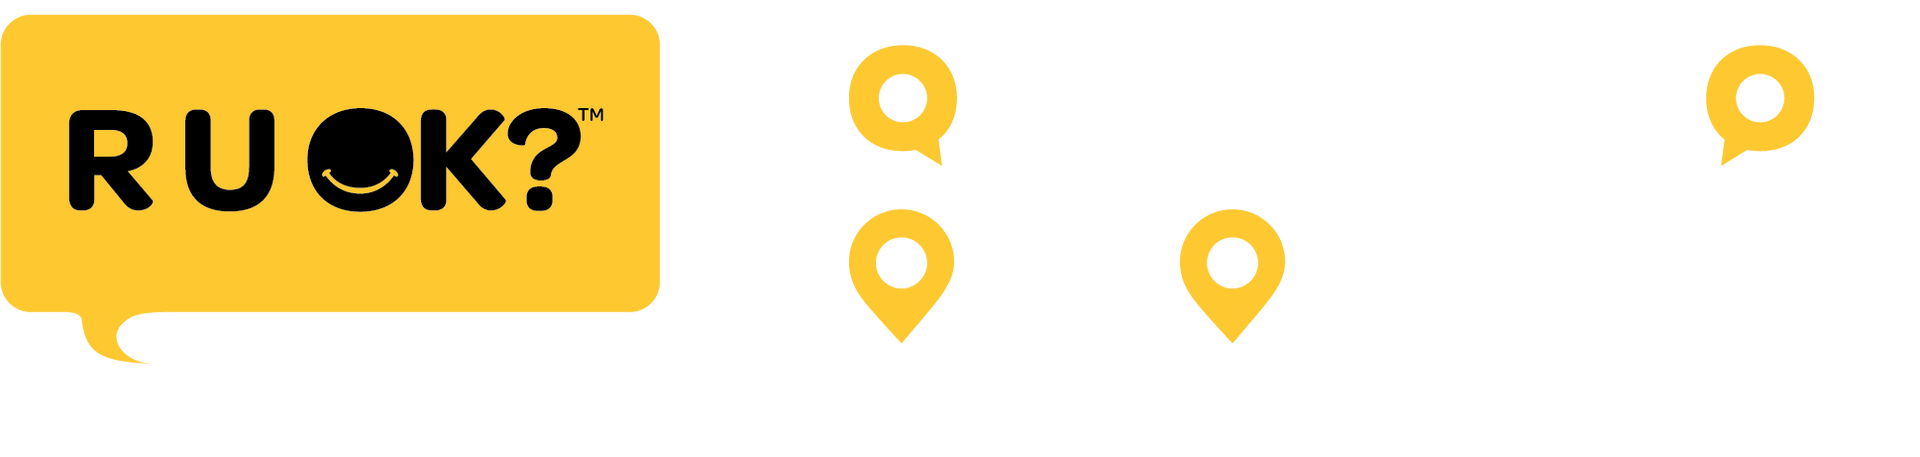 Conversation Convoy logo